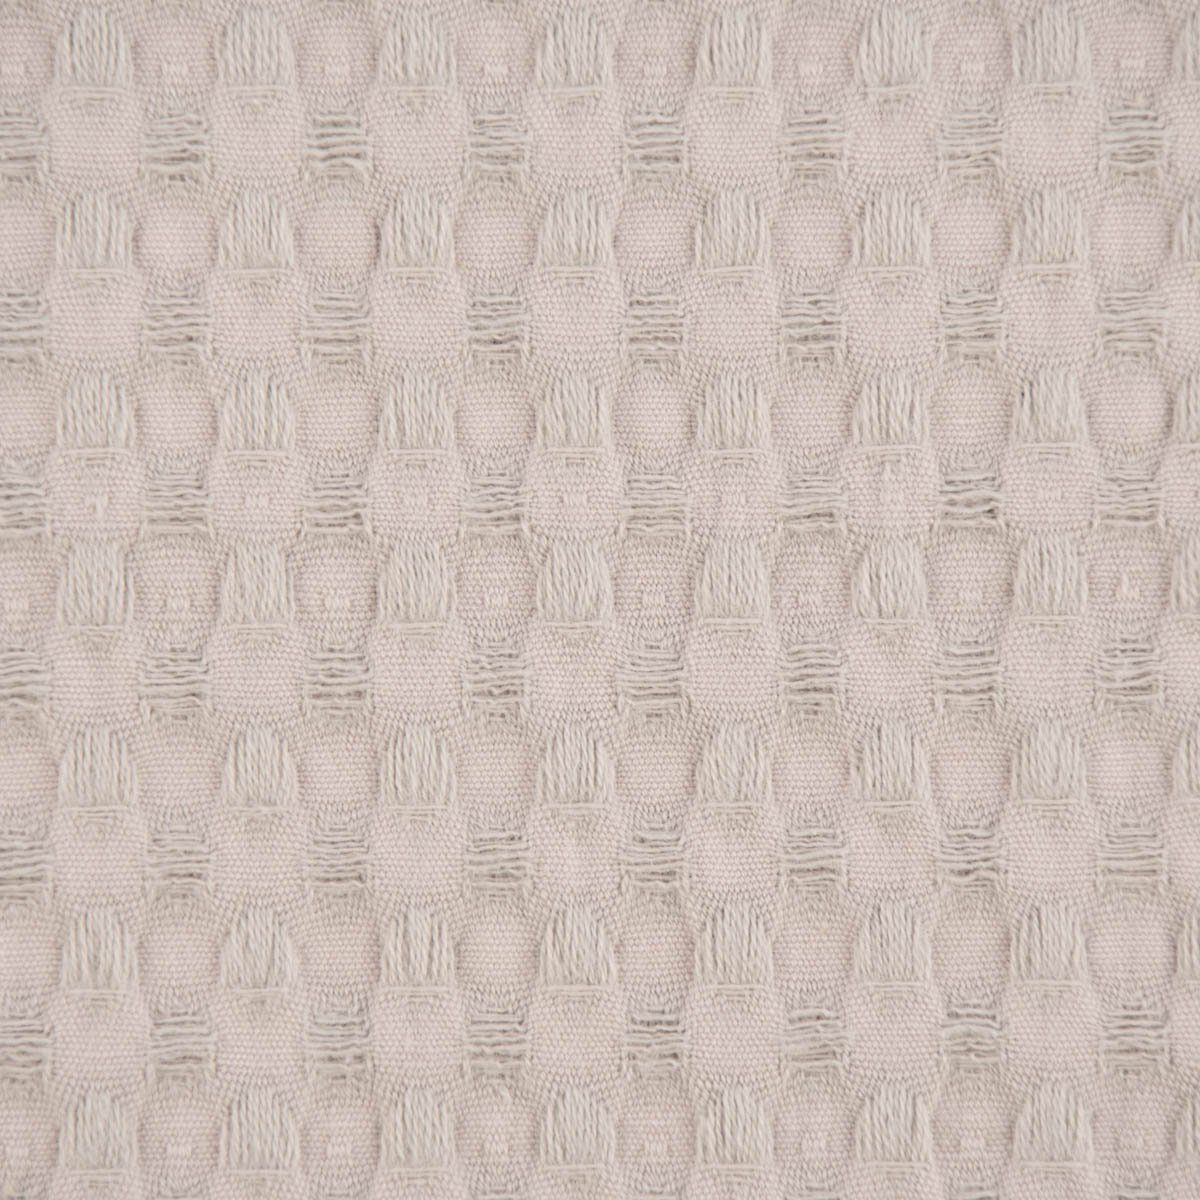 SCHÖNER LEBEN. Stoff Waffelpique soft Waffelstoff Baumwolle uni hellgrau 1,35m Breite, atmungsaktiv